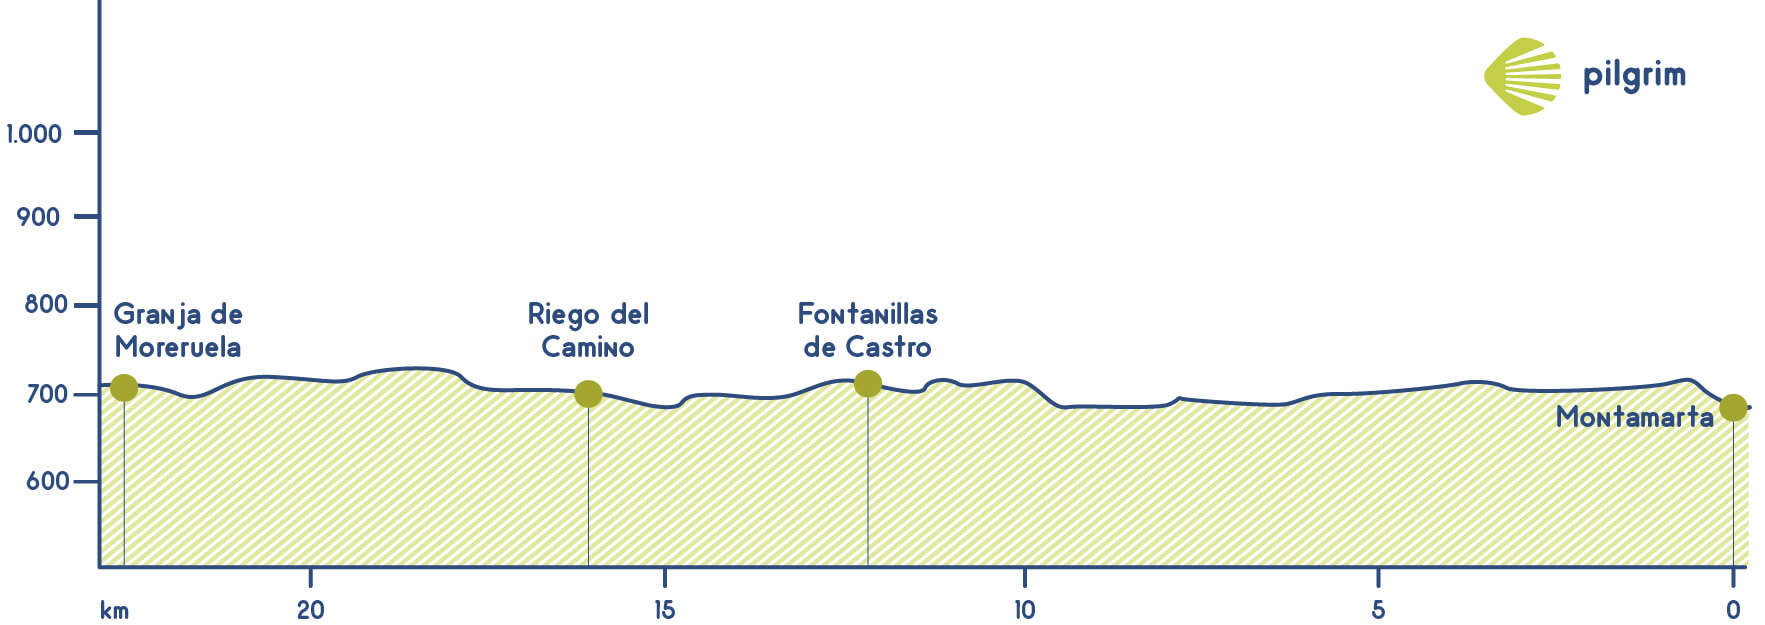 Stage 23 Vía de la Plata